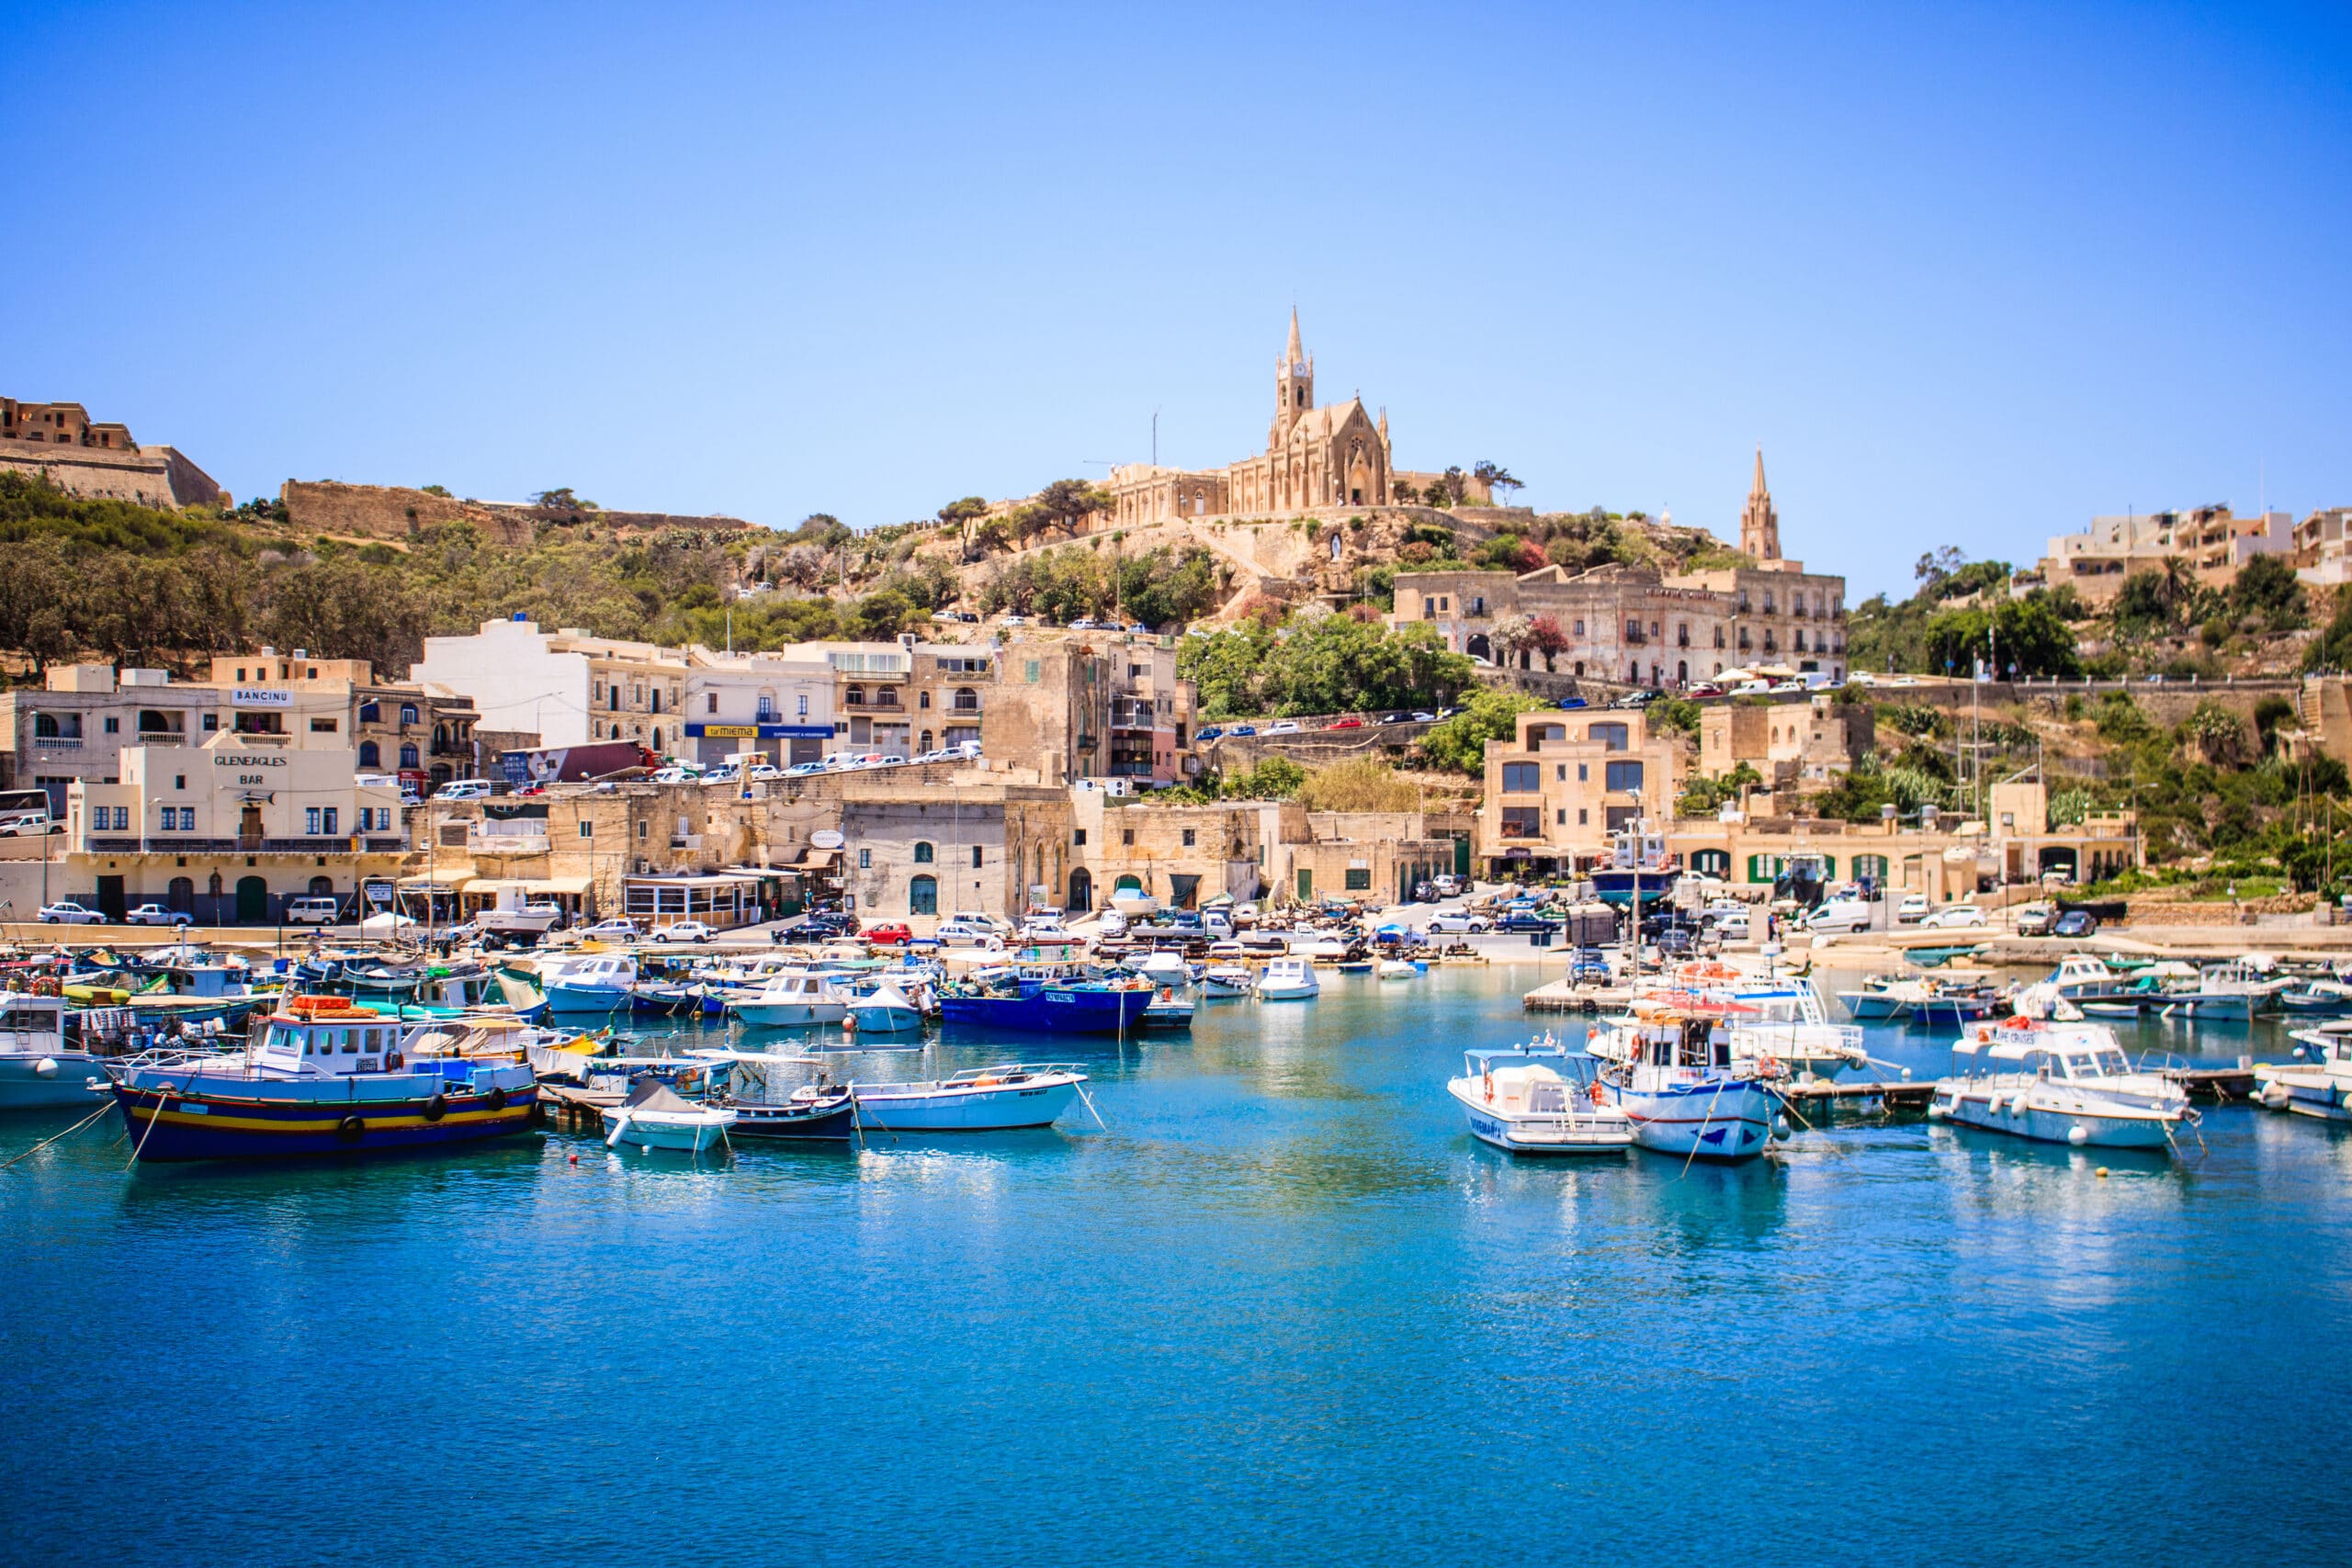 Boek & ga mee! Malta en Gozo in mei